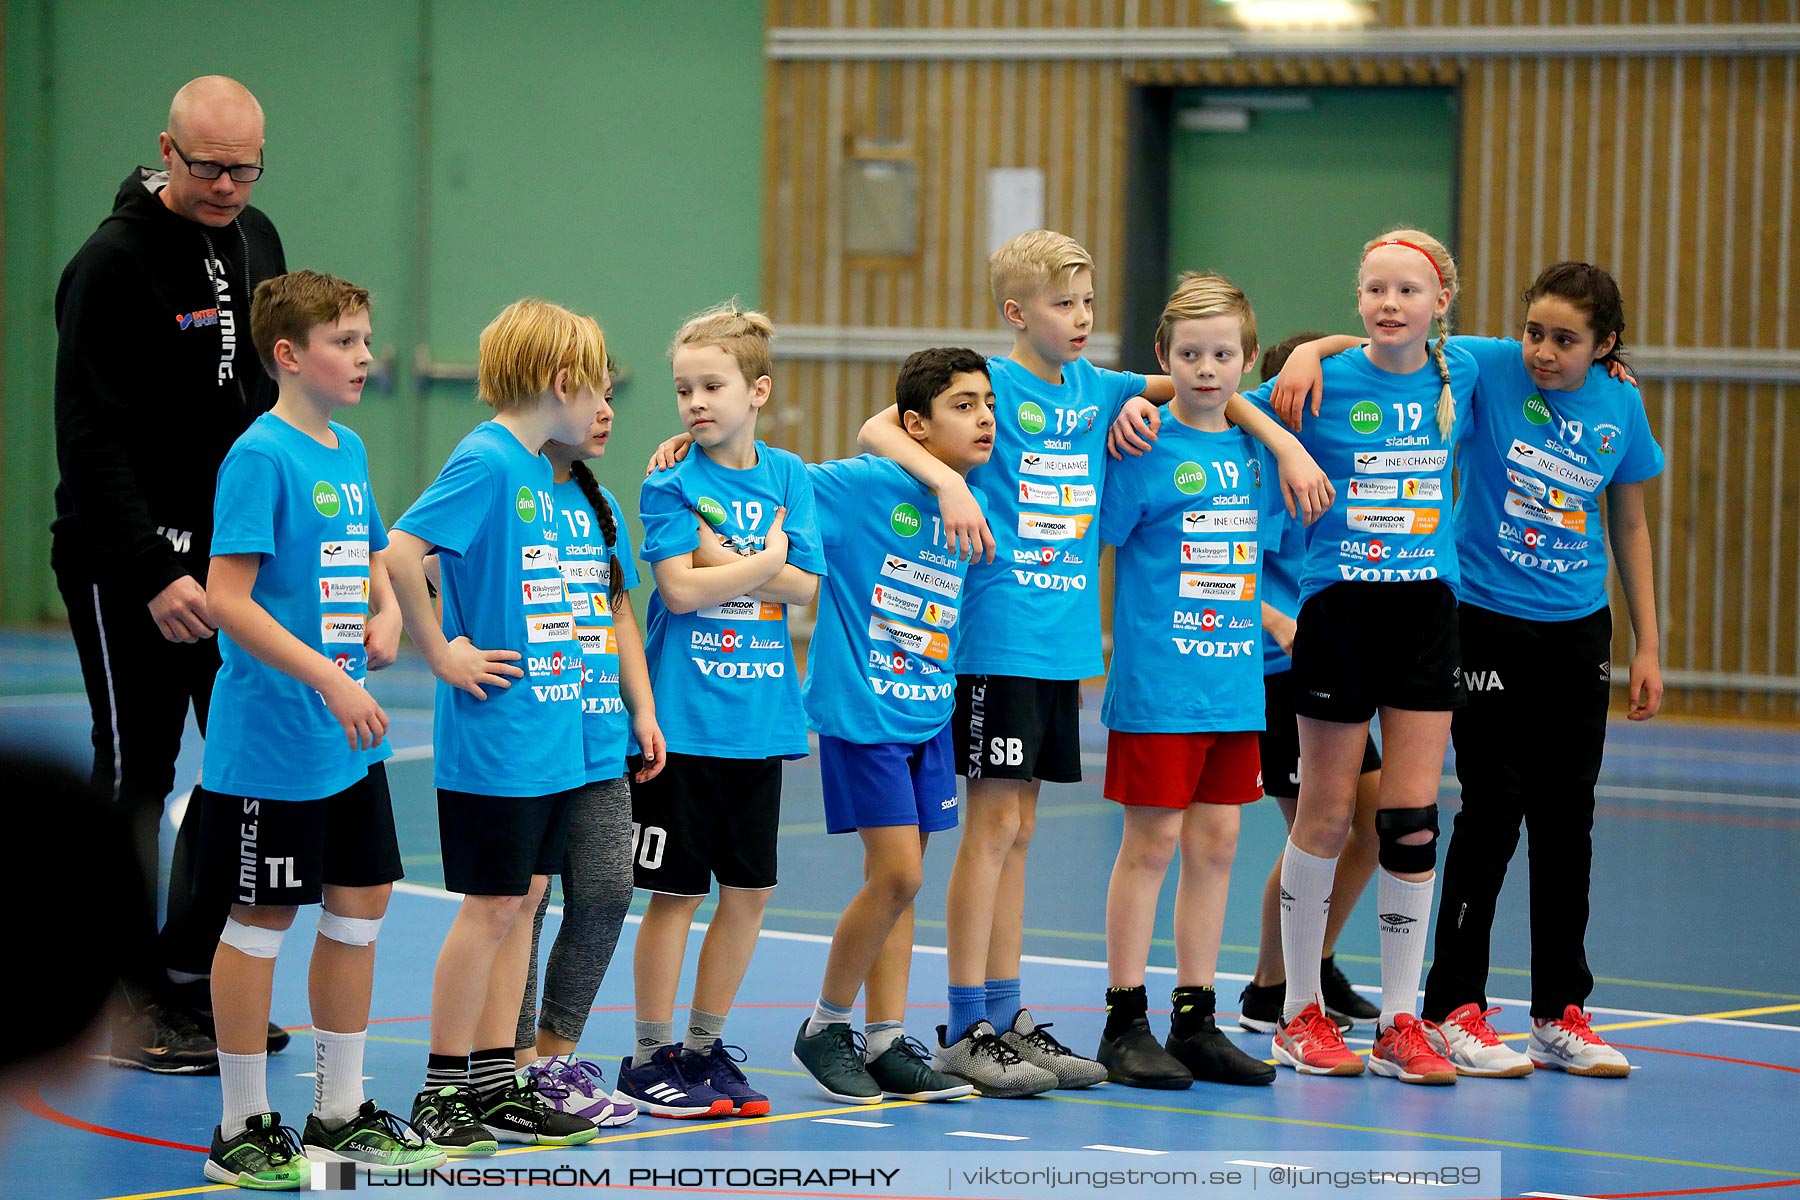 Klasshandboll Skövde 2019 Åldersklass 2008,mix,Arena Skövde,Skövde,Sverige,Handboll,,2019,211835